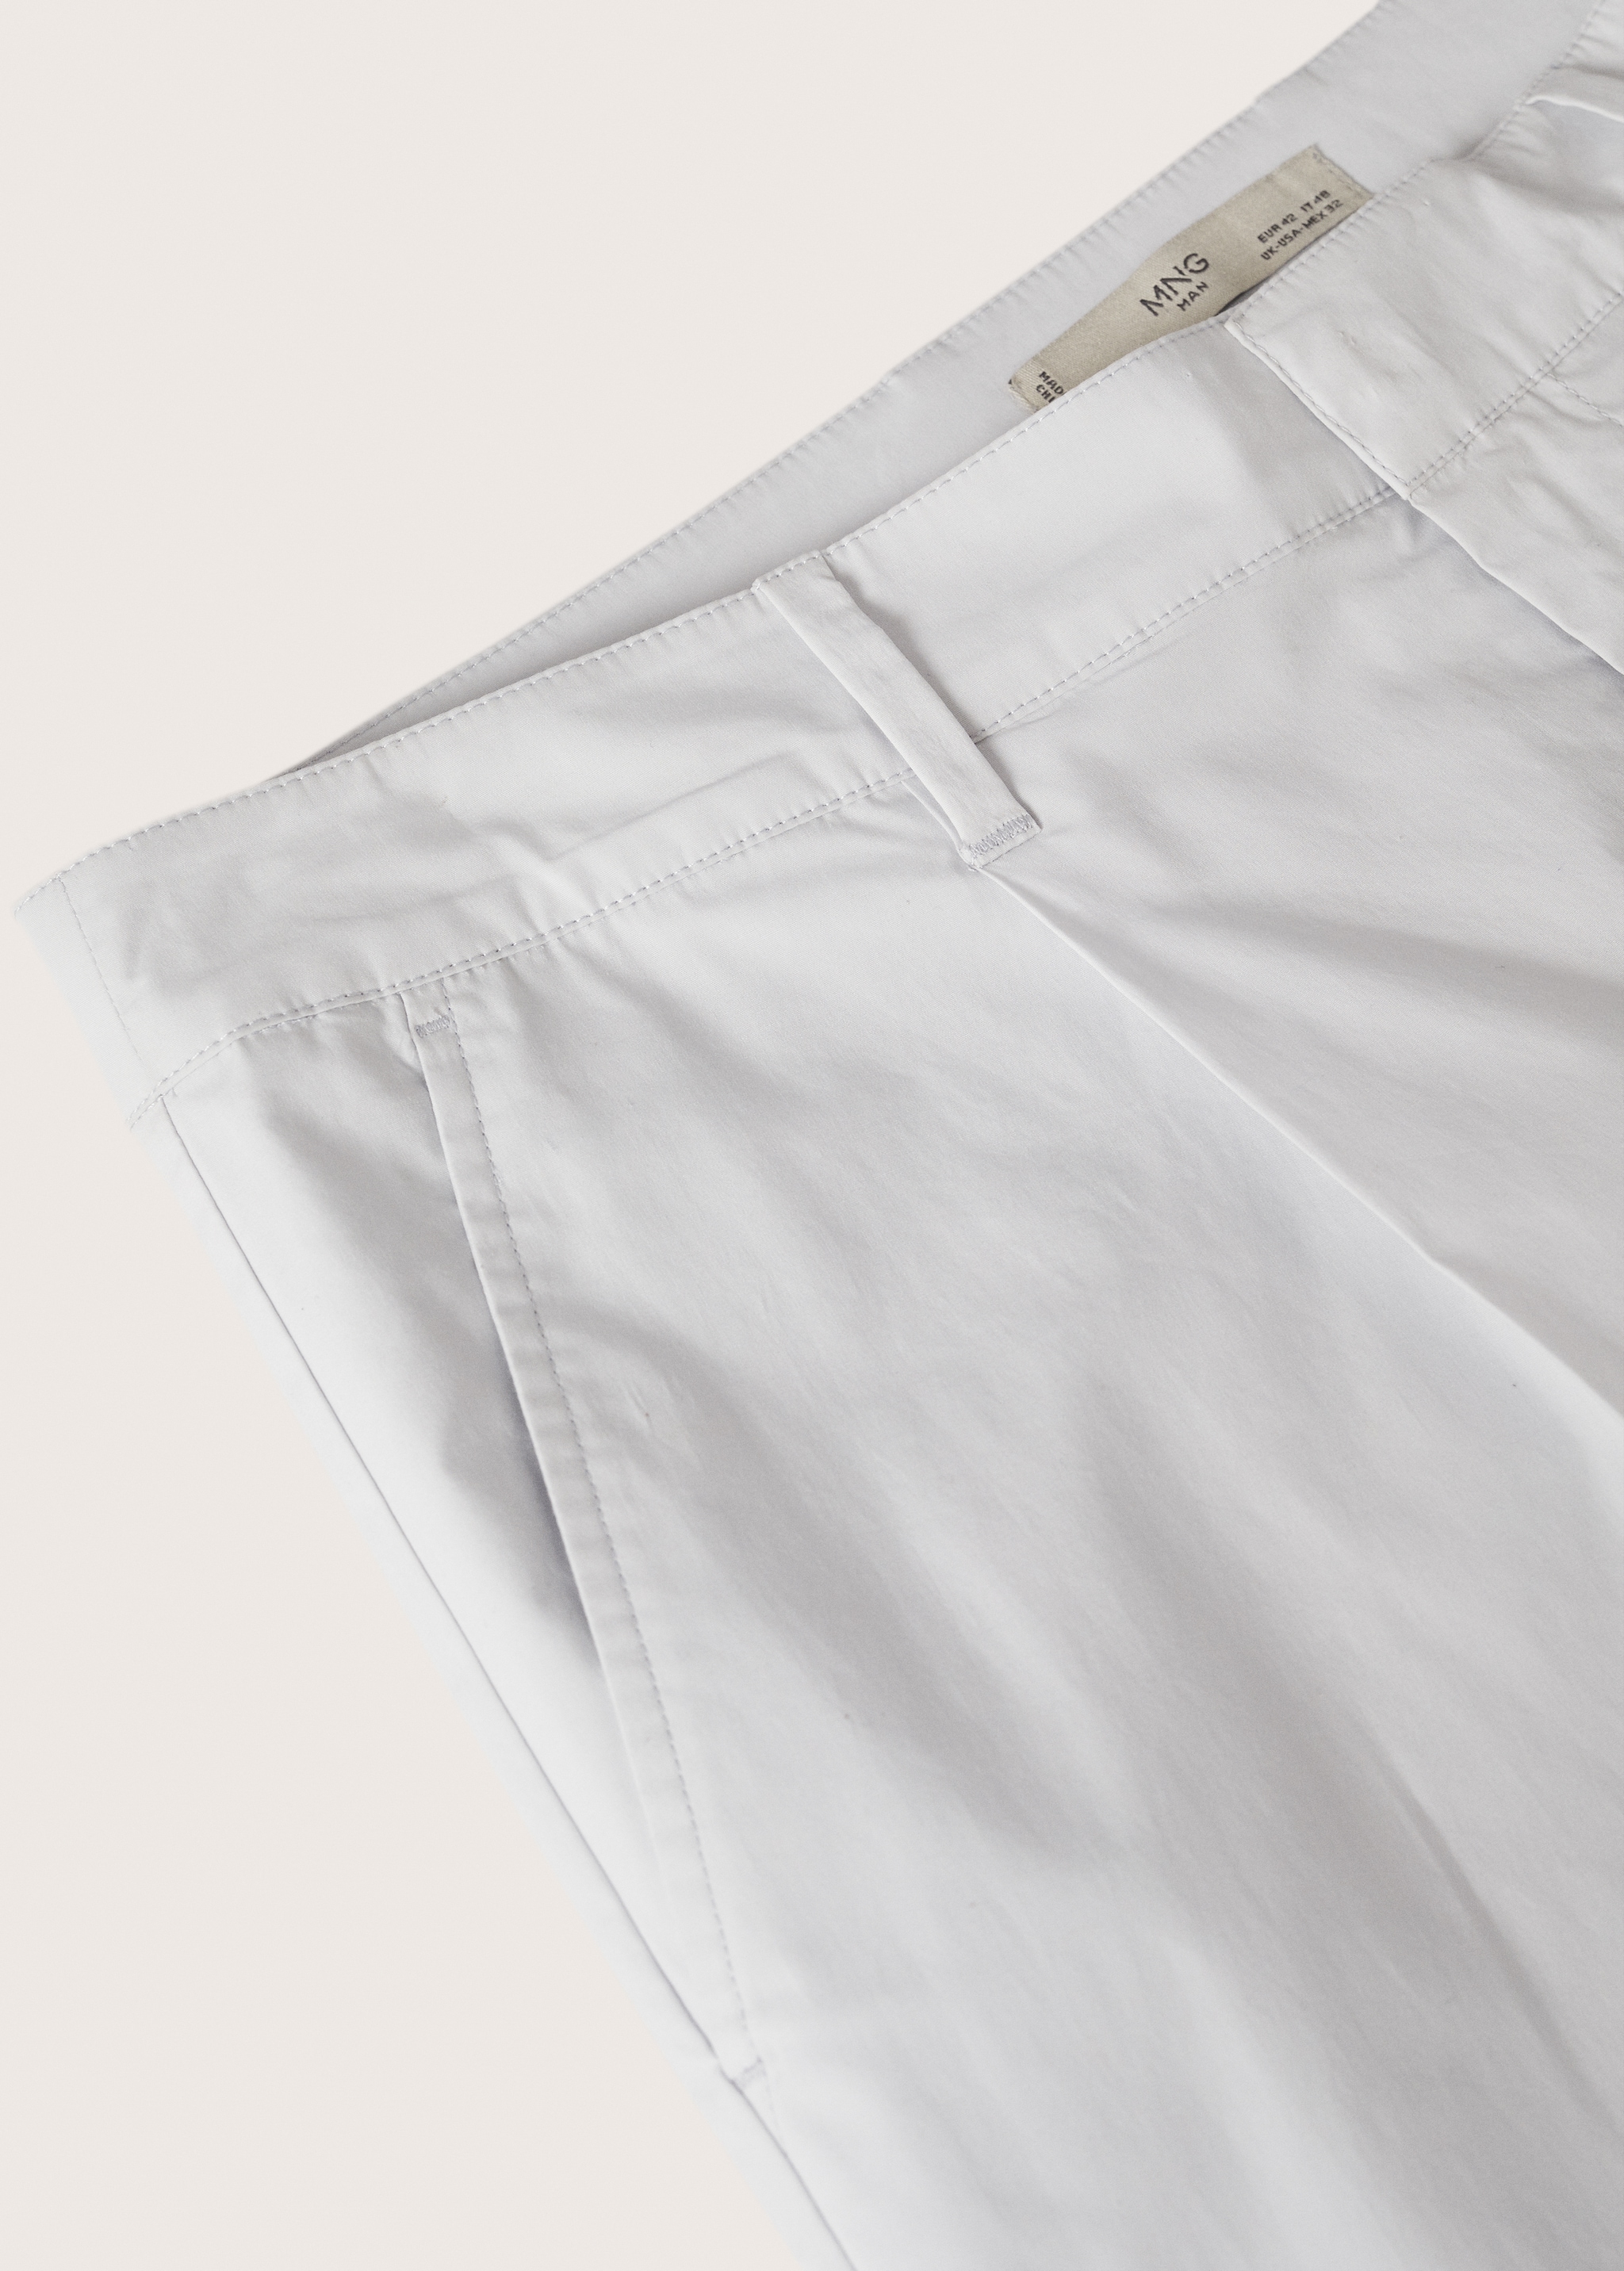 Pantalón pinzas algodón - Detalle del artículo 8